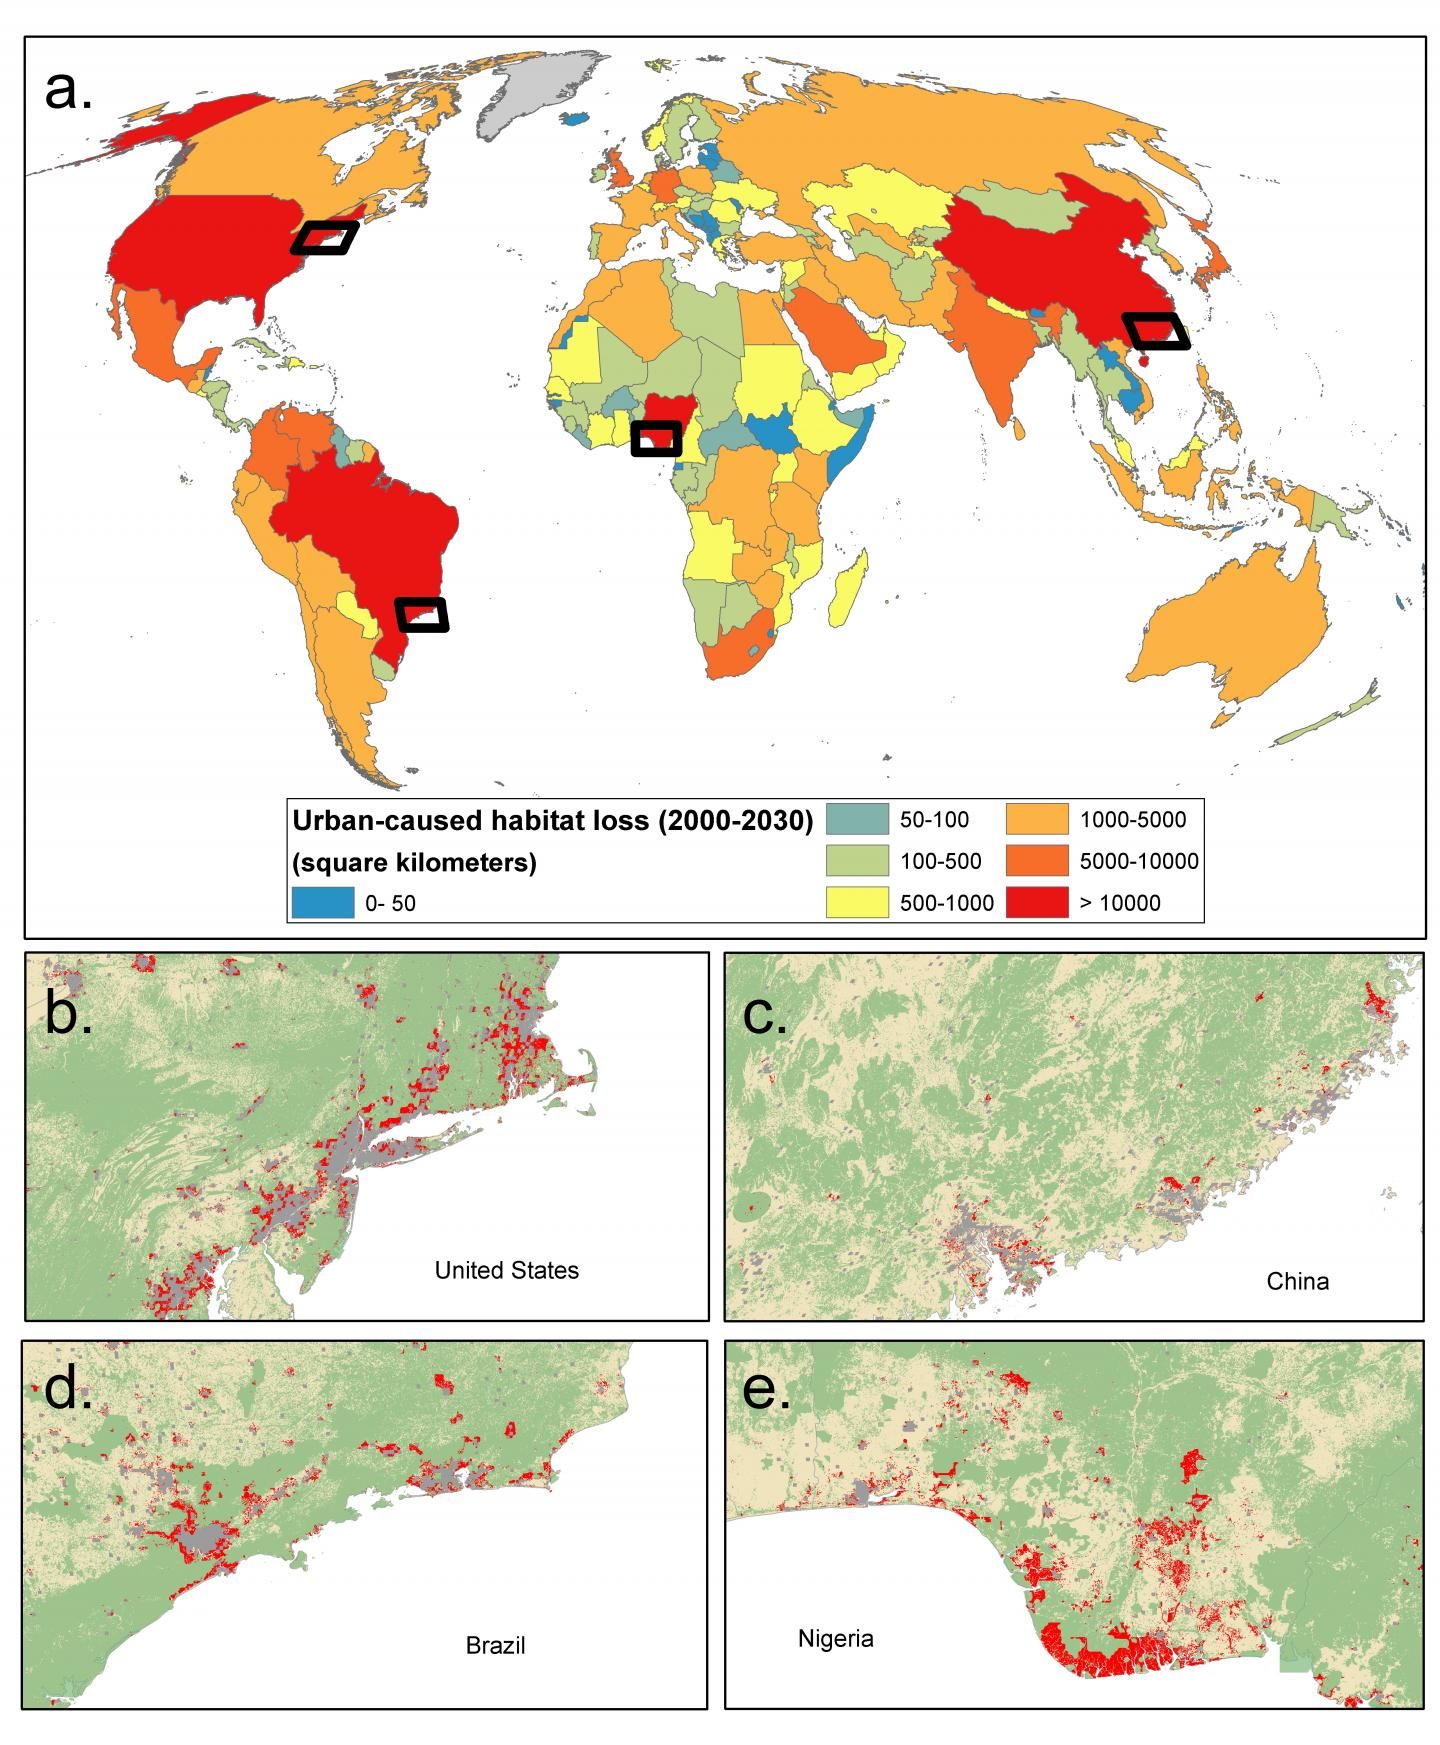 Impactos diretos previstos do crescimento urbano no habitat (2000-2030)